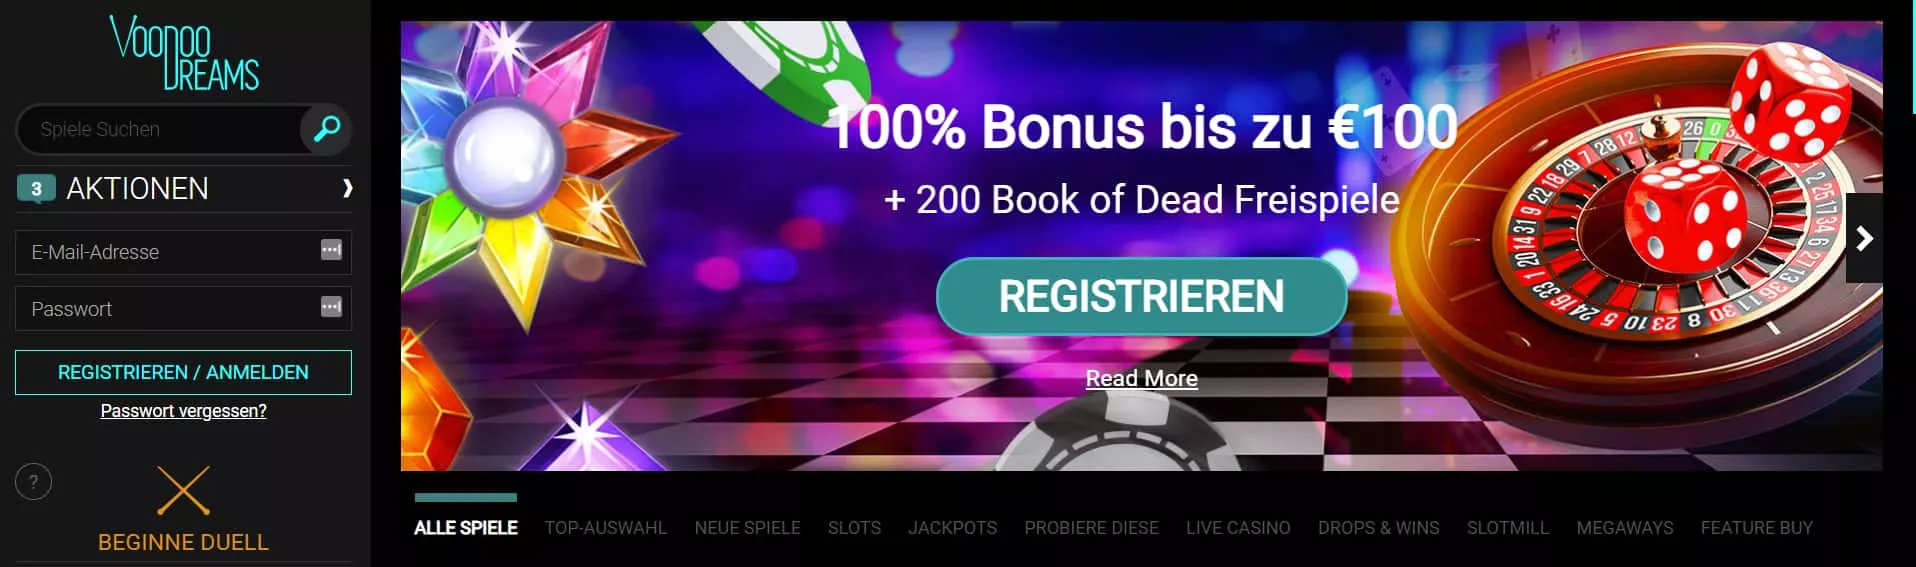 VoodooDreams Casino Bonus